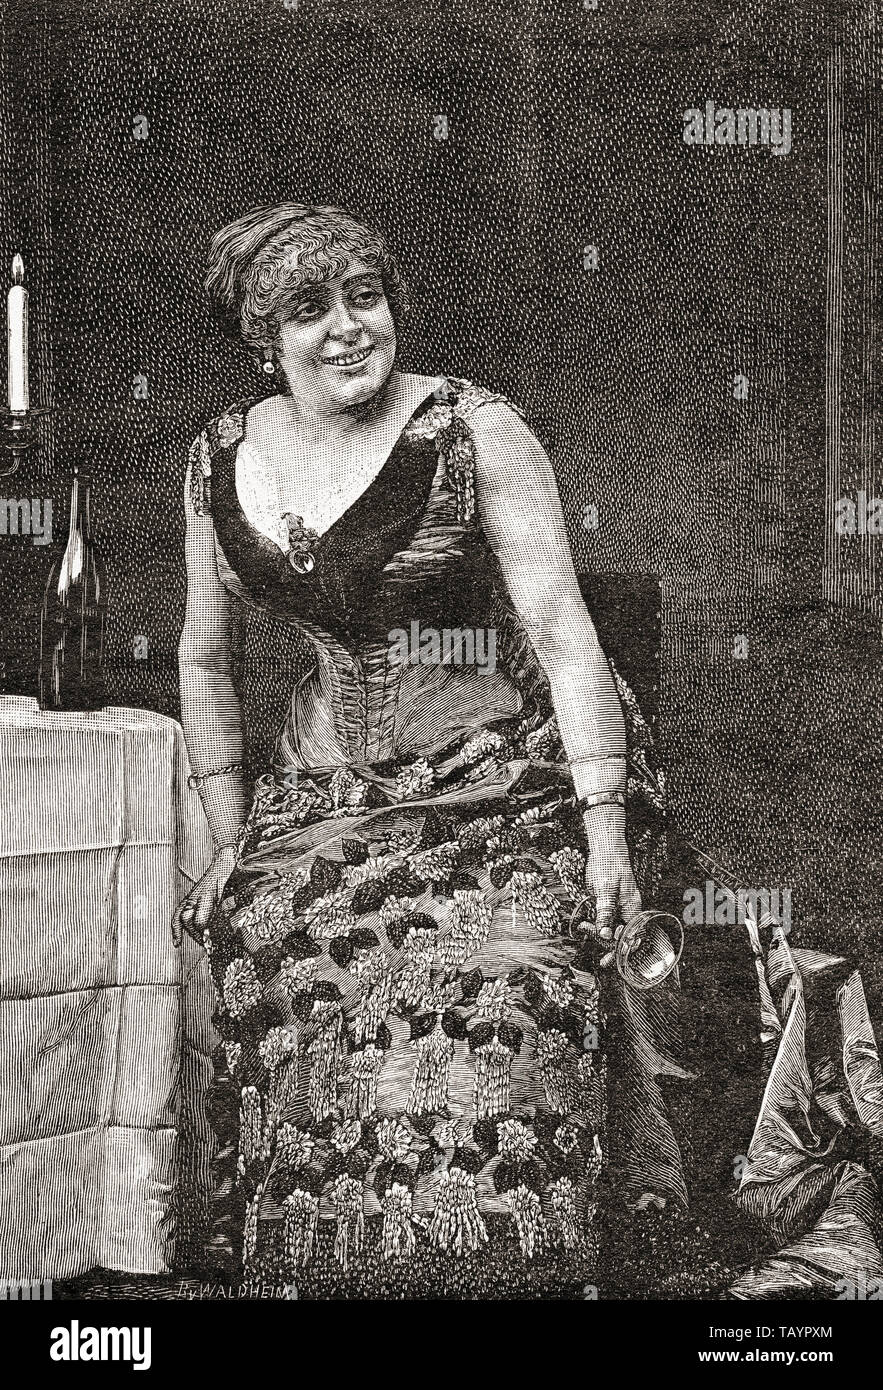 Anne Marie-Louise Damiens, nom de scène Anna Judic, 1849 -1911. L'actrice comique français. De la Ilustracion Iberica, publié en 1884. Banque D'Images